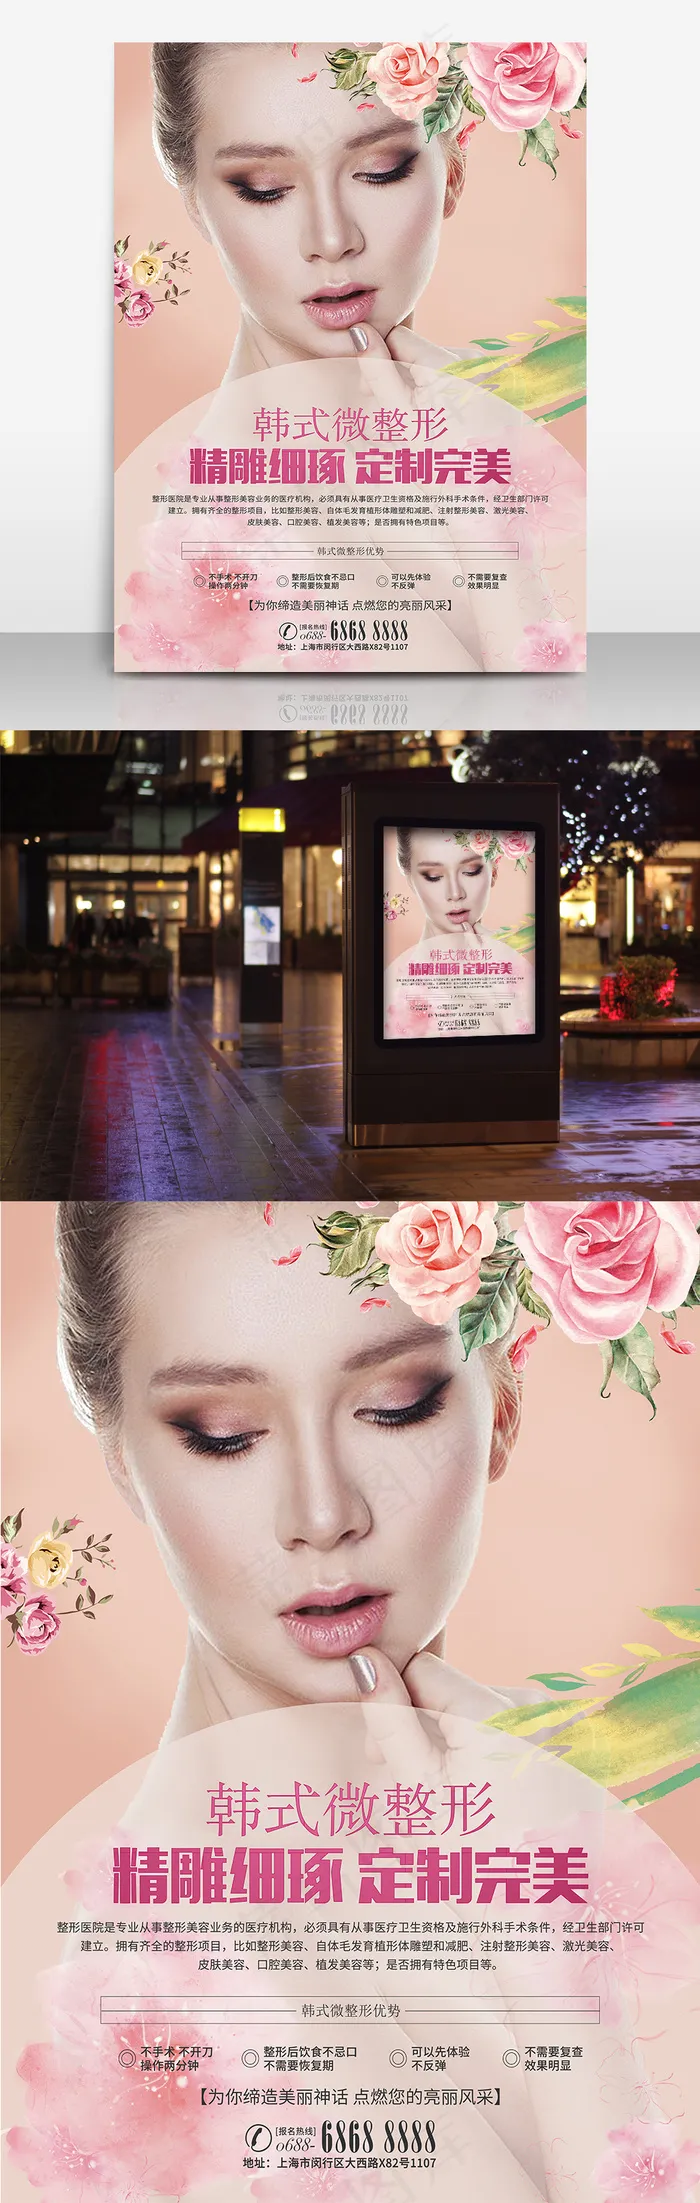 韩式半永久微整形美容整形美女粉色背景浪漫海报